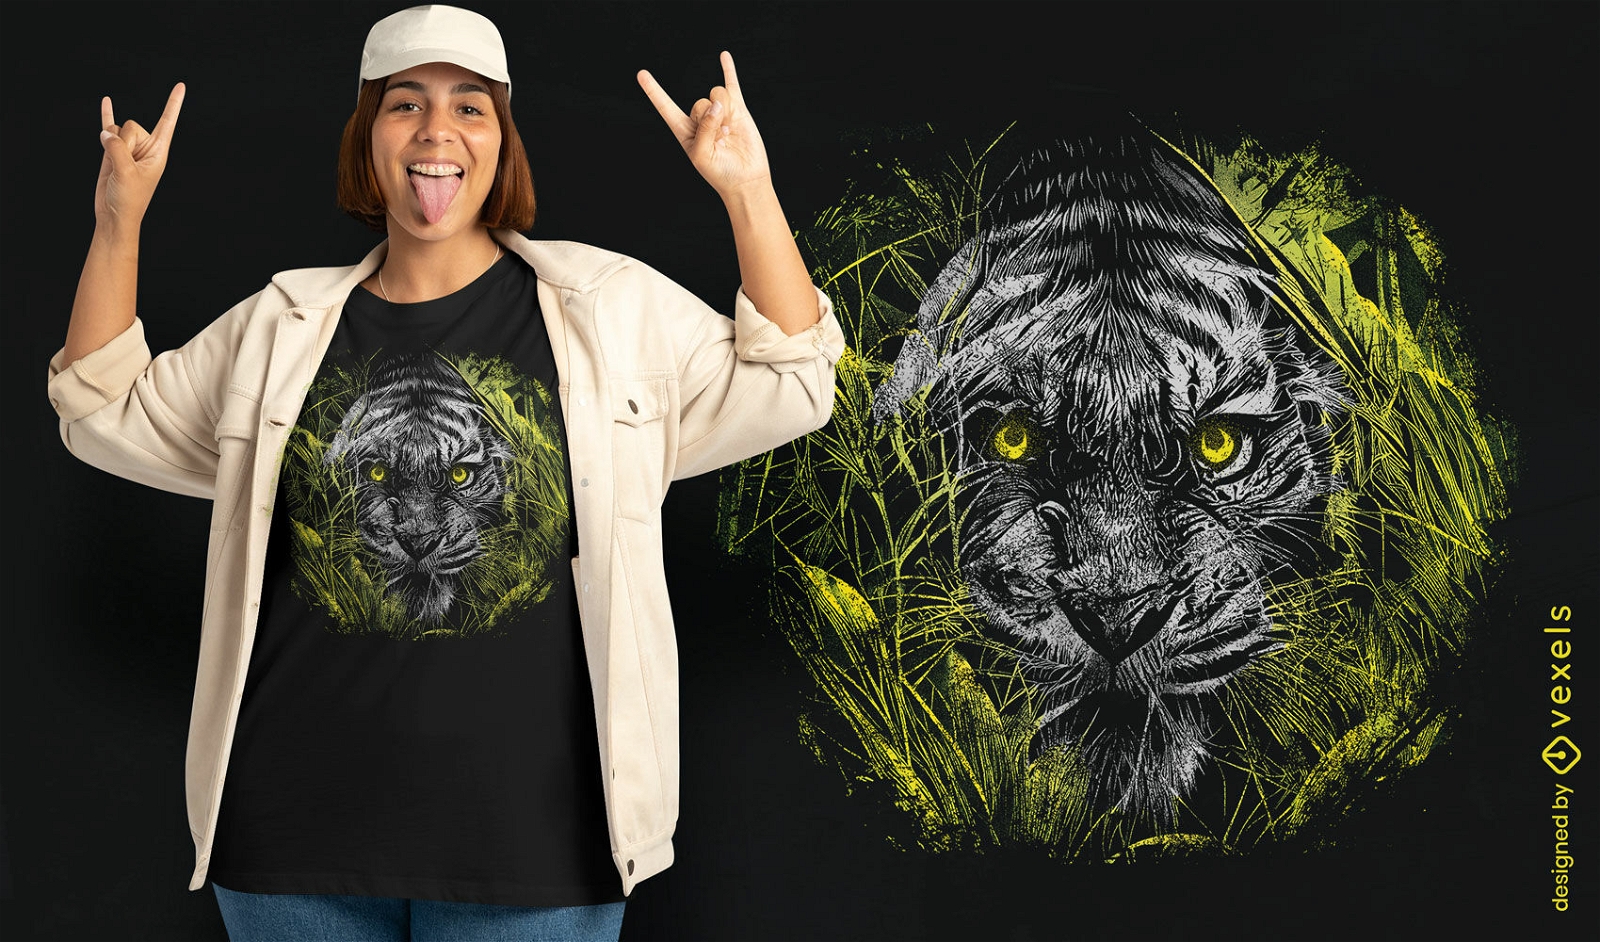 Dise?o de camiseta de tigre escondido en la hierba.